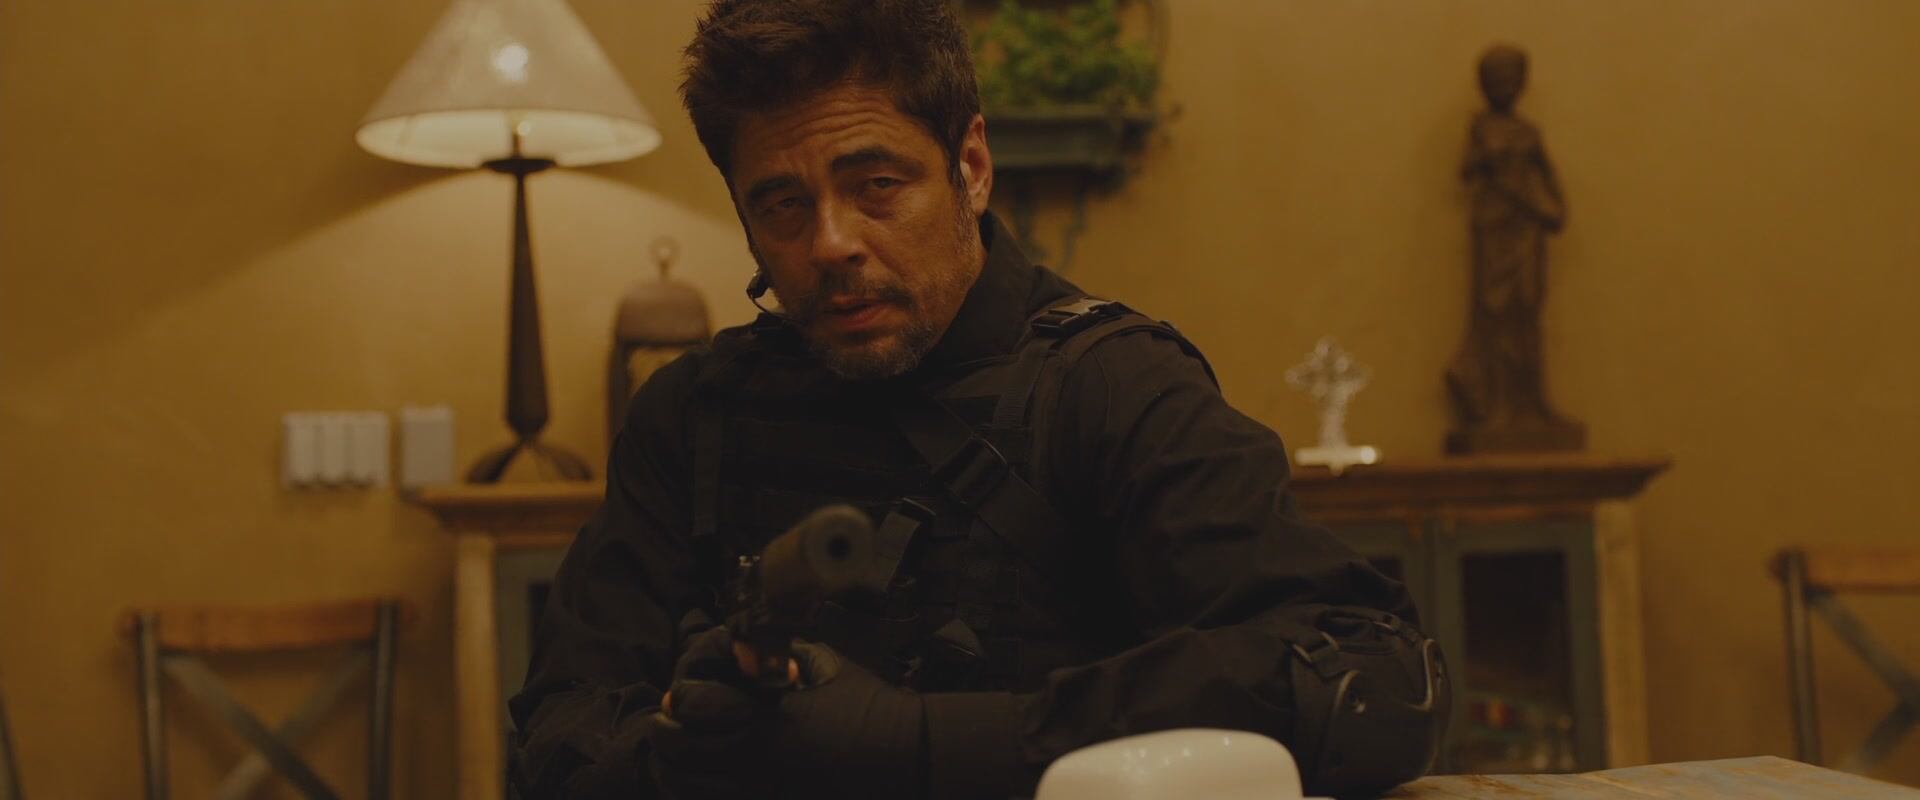 Benicio del Toro en un fotograma de 'Sicario' (dir. Villenueve, 2015).